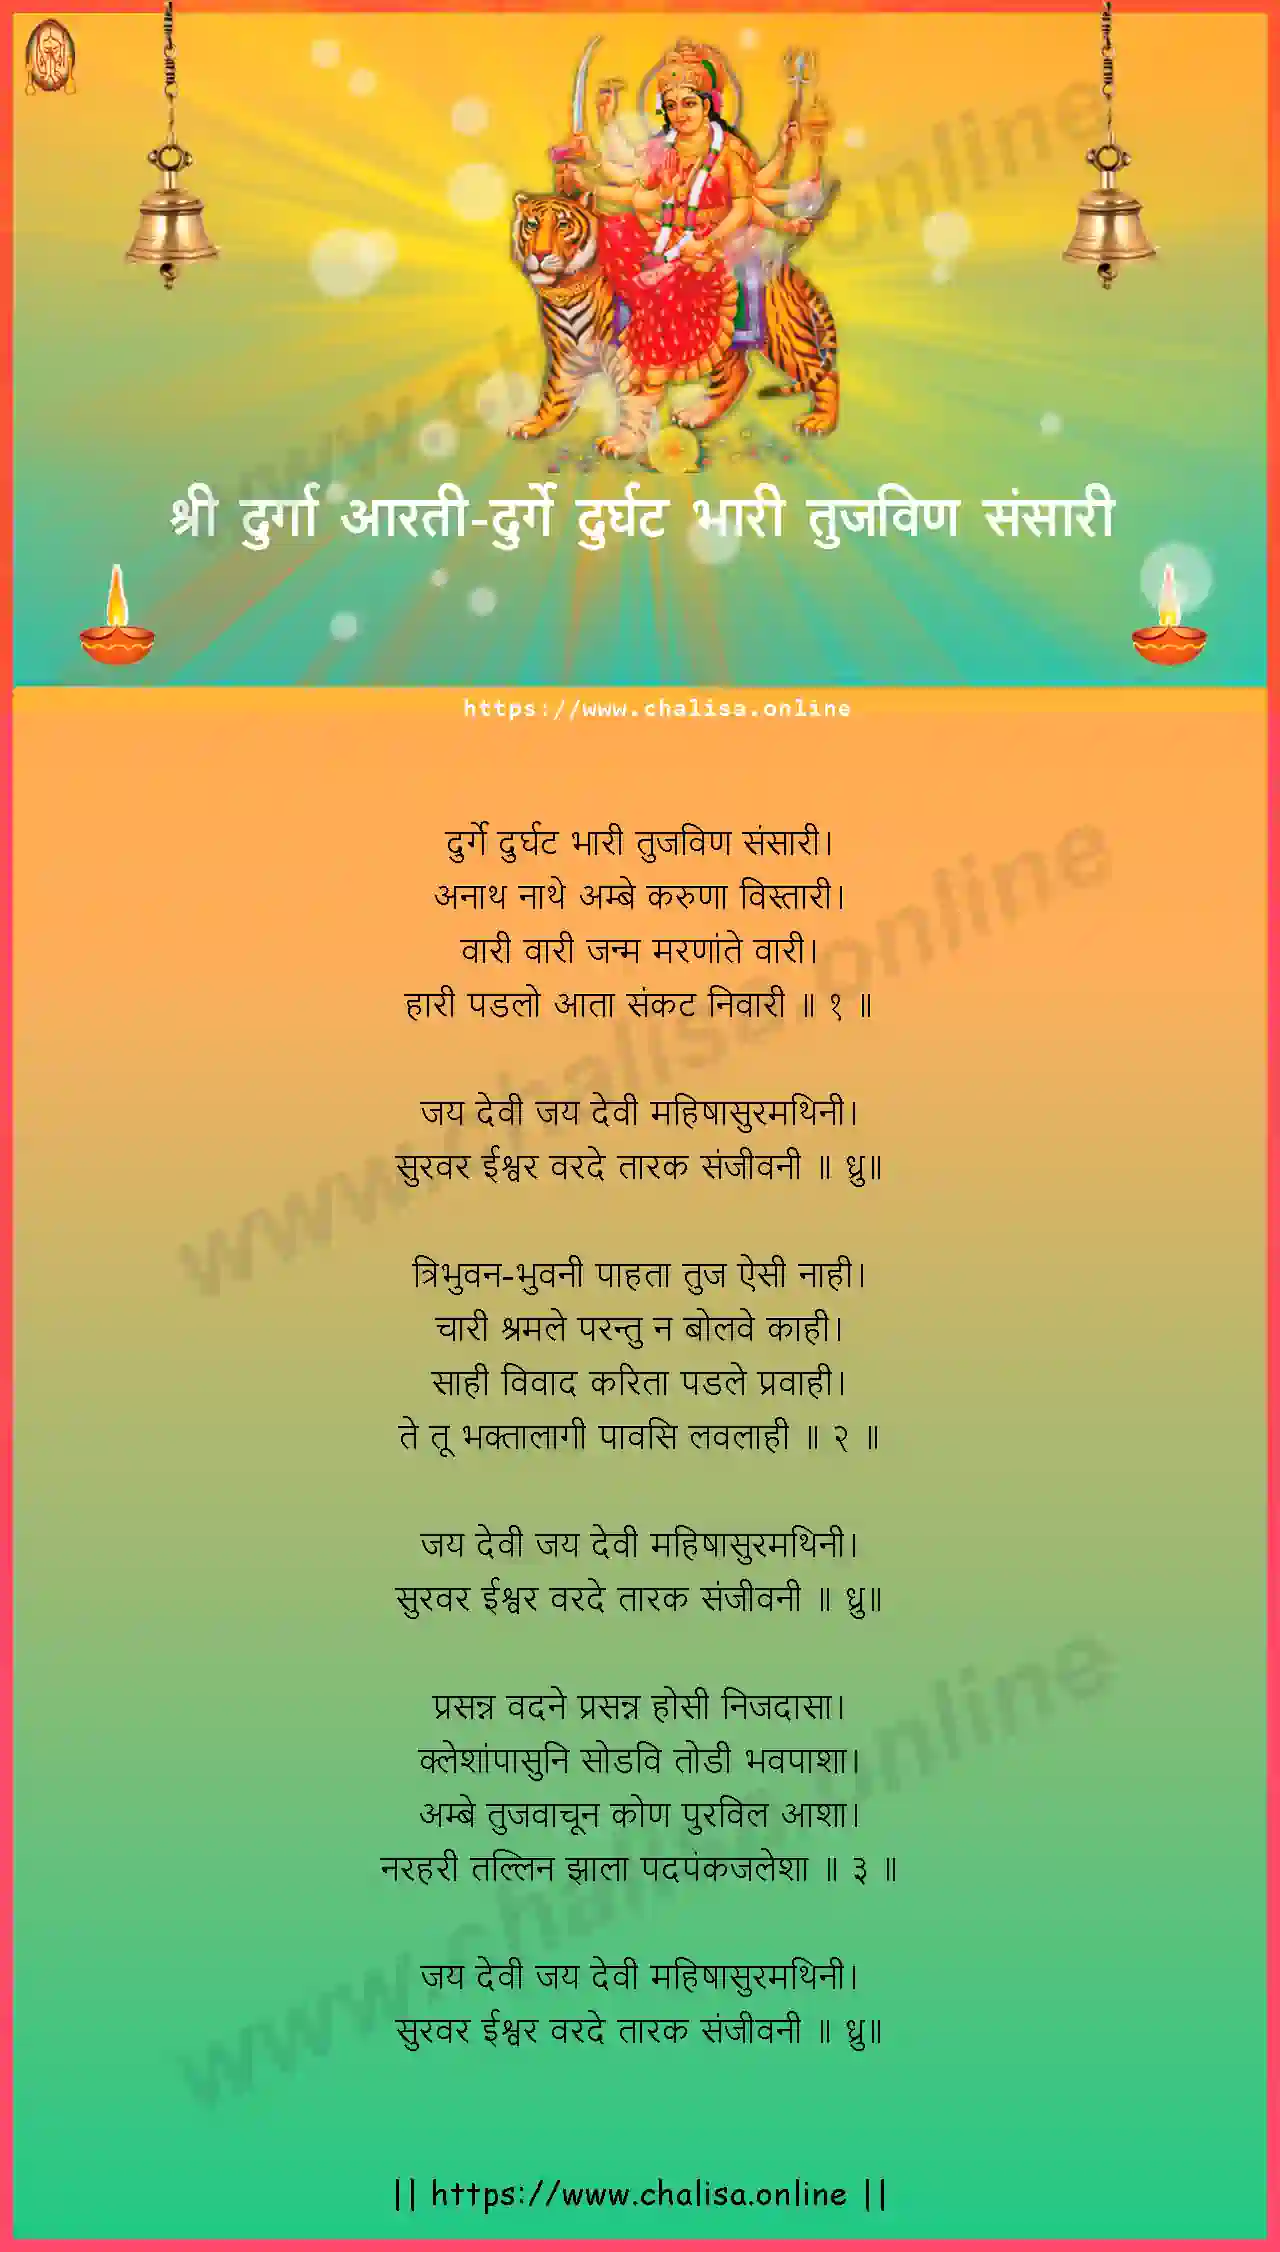 durge-durghat-bhari-durga-devi-aarti-marathi-lyrics-download